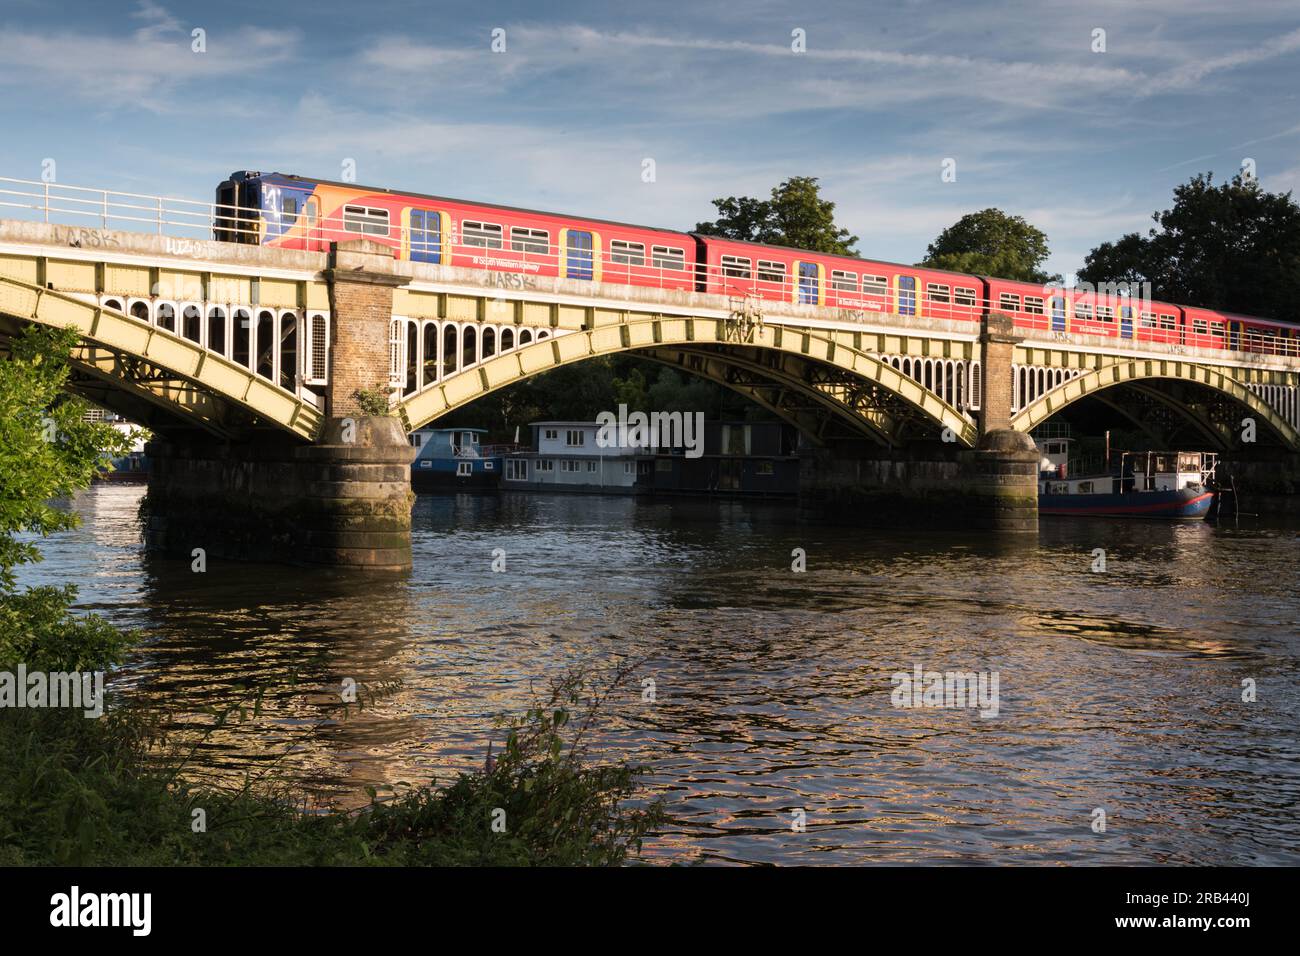 Train de banlieue South Western Railways sur le pont Richmond Railway, au-dessus de la Tamise, Londres, Angleterre, Royaume-Uni Banque D'Images